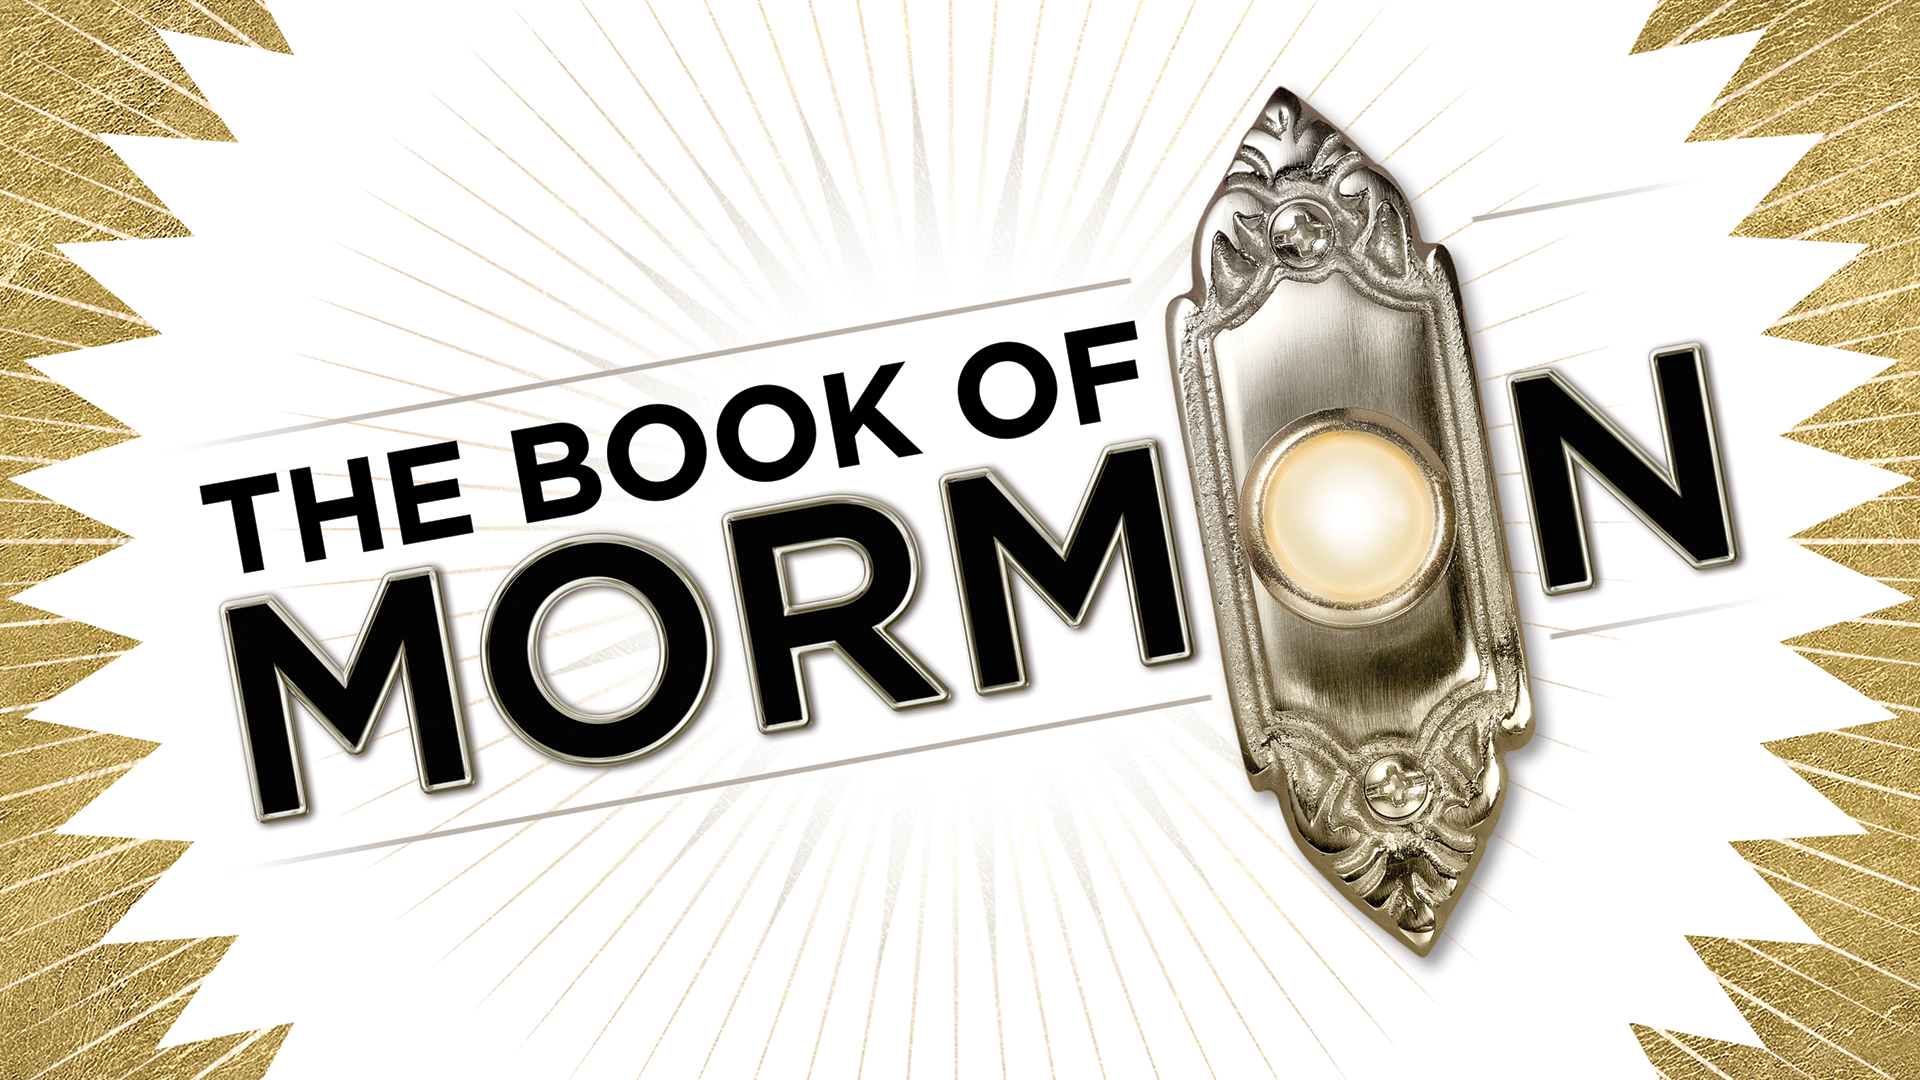 book of mormon ccpac